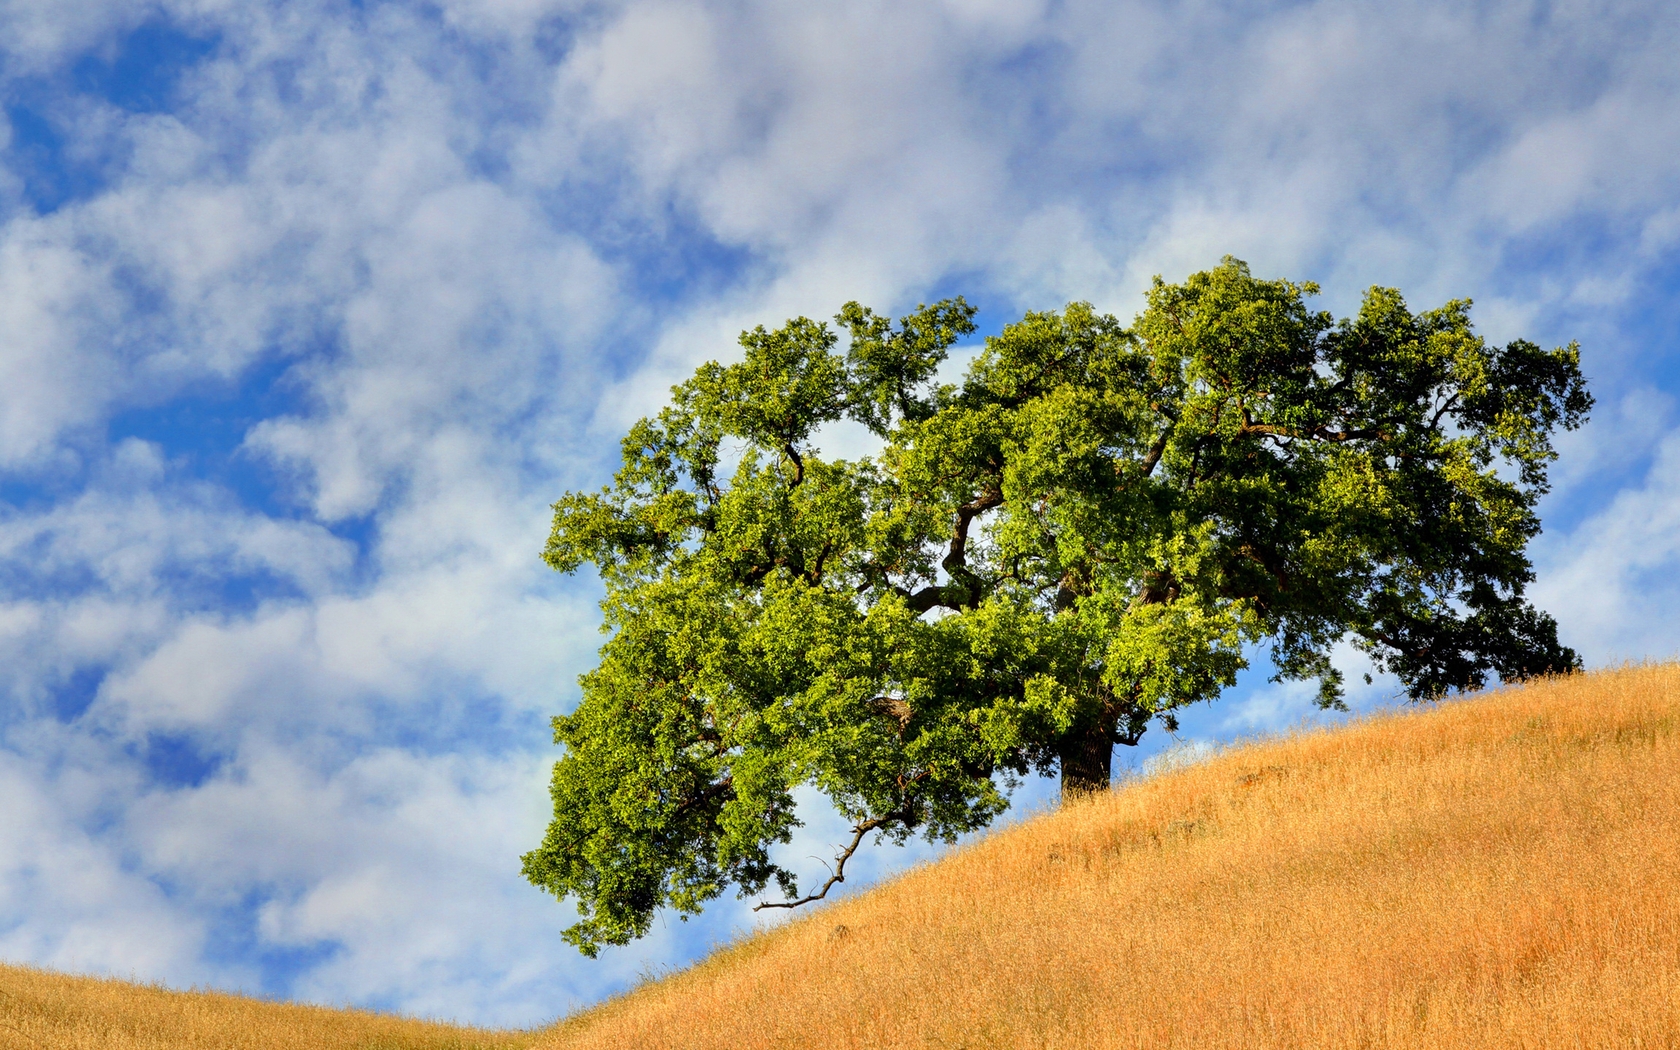 Image: Tree, field, hillside, landscape, sky, clouds